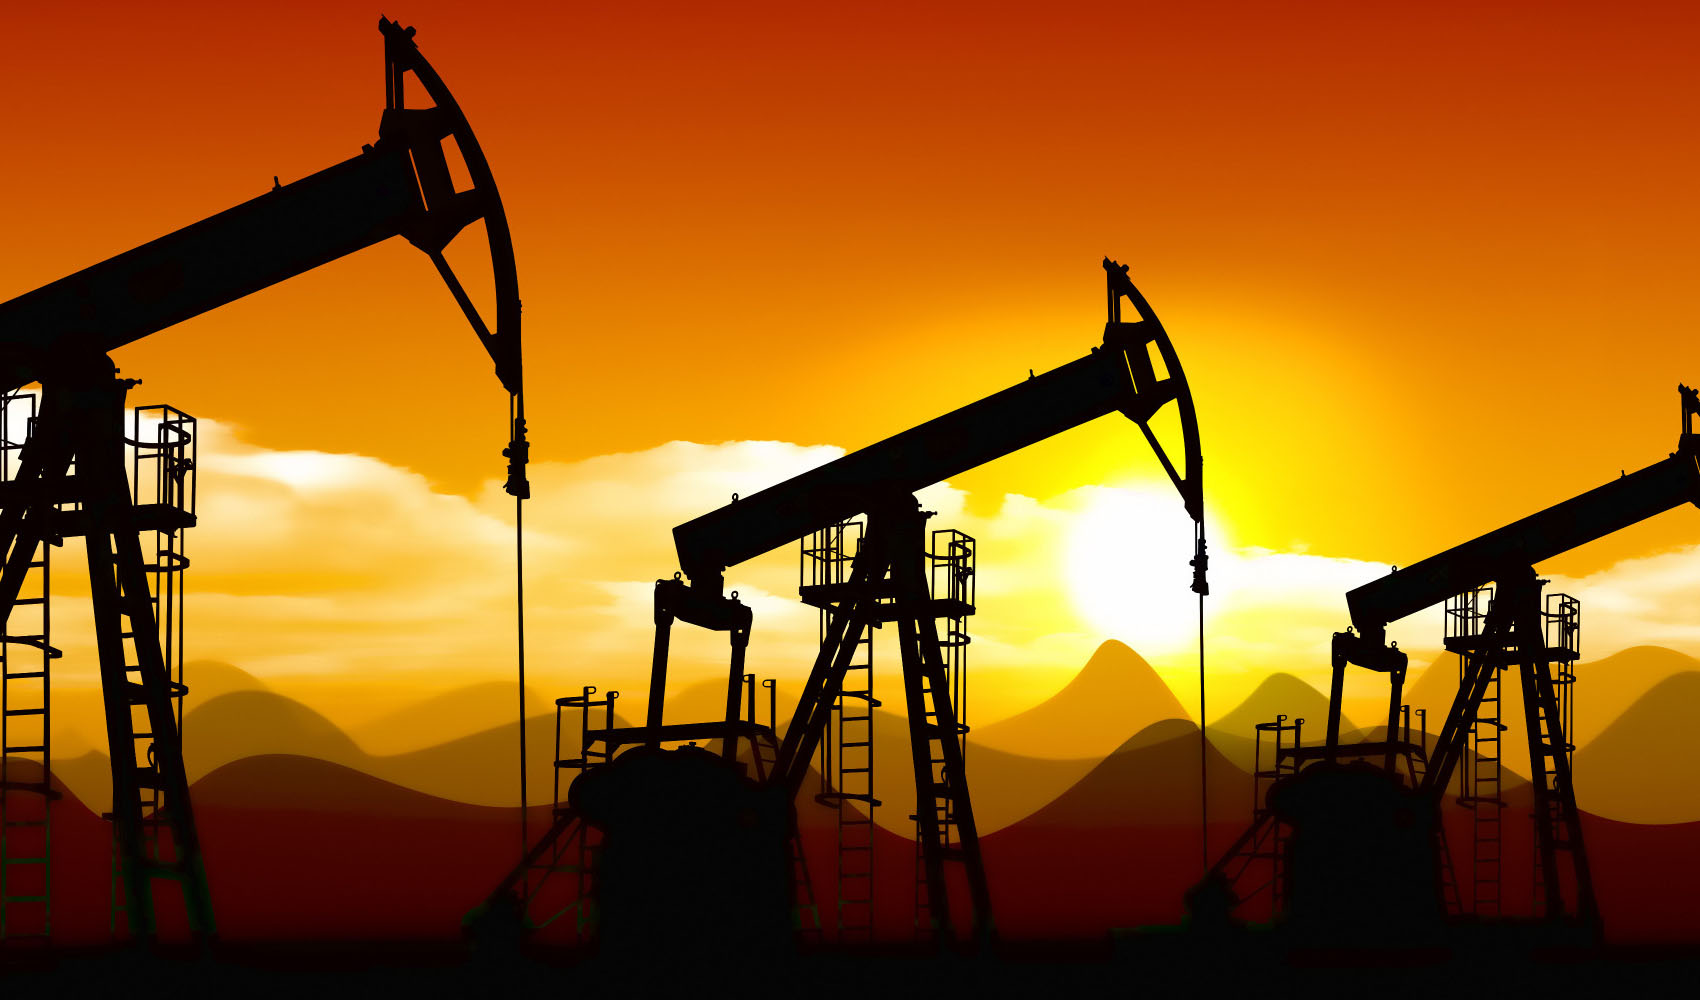 فروش نفت با تهاتر افزایش می یابد؟